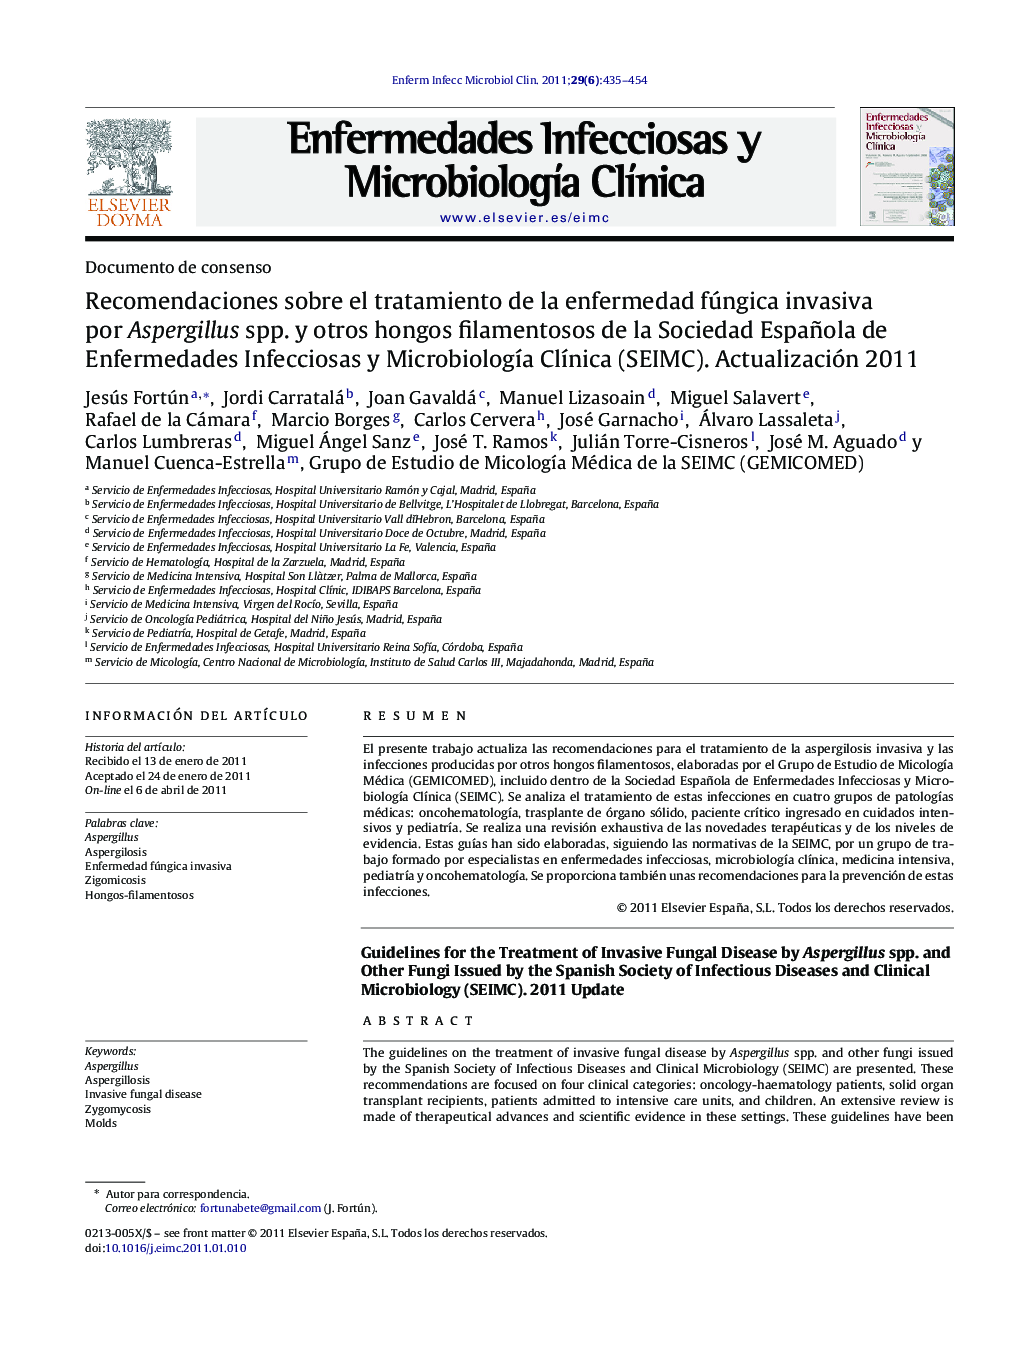 Recomendaciones sobre el tratamiento de la enfermedad fúngica invasiva por Aspergillus spp. y otros hongos filamentosos de la Sociedad Española de Enfermedades Infecciosas y Microbiología Clínica (SEIMC). Actualización 2011